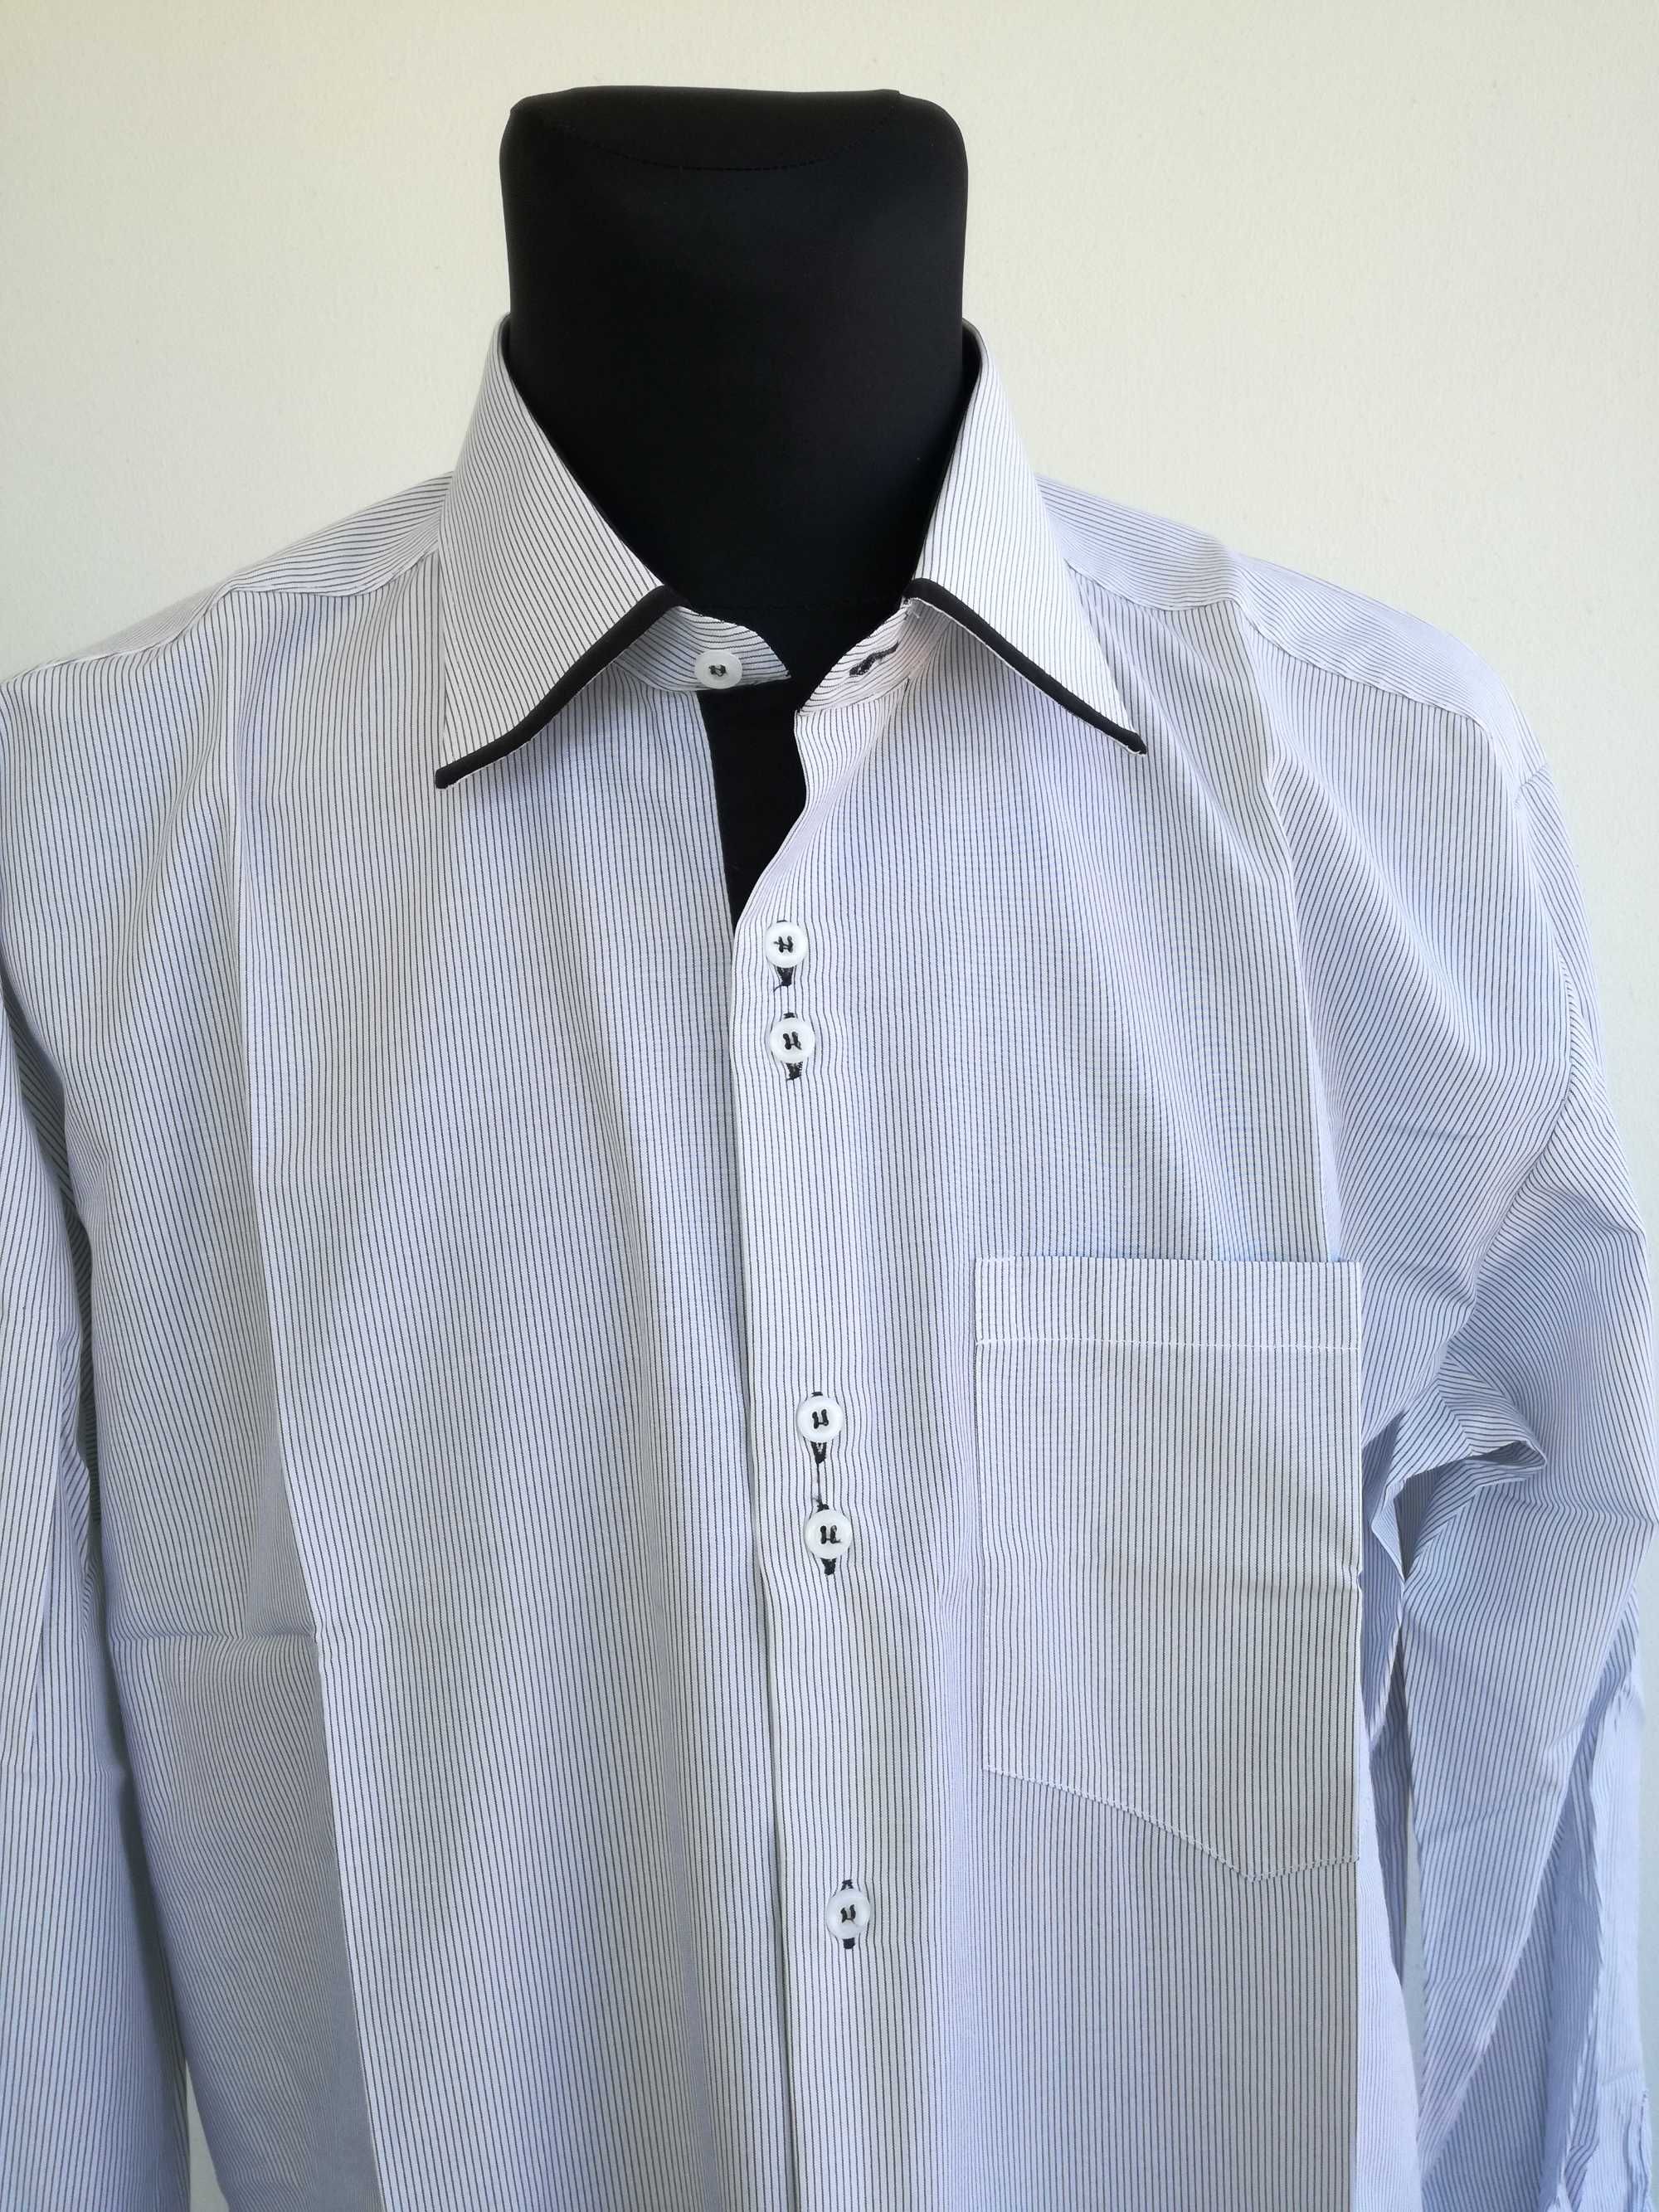 Koszula męska nowa 43-44 rozmiar z metką 176-182 wzrost biała w  paski